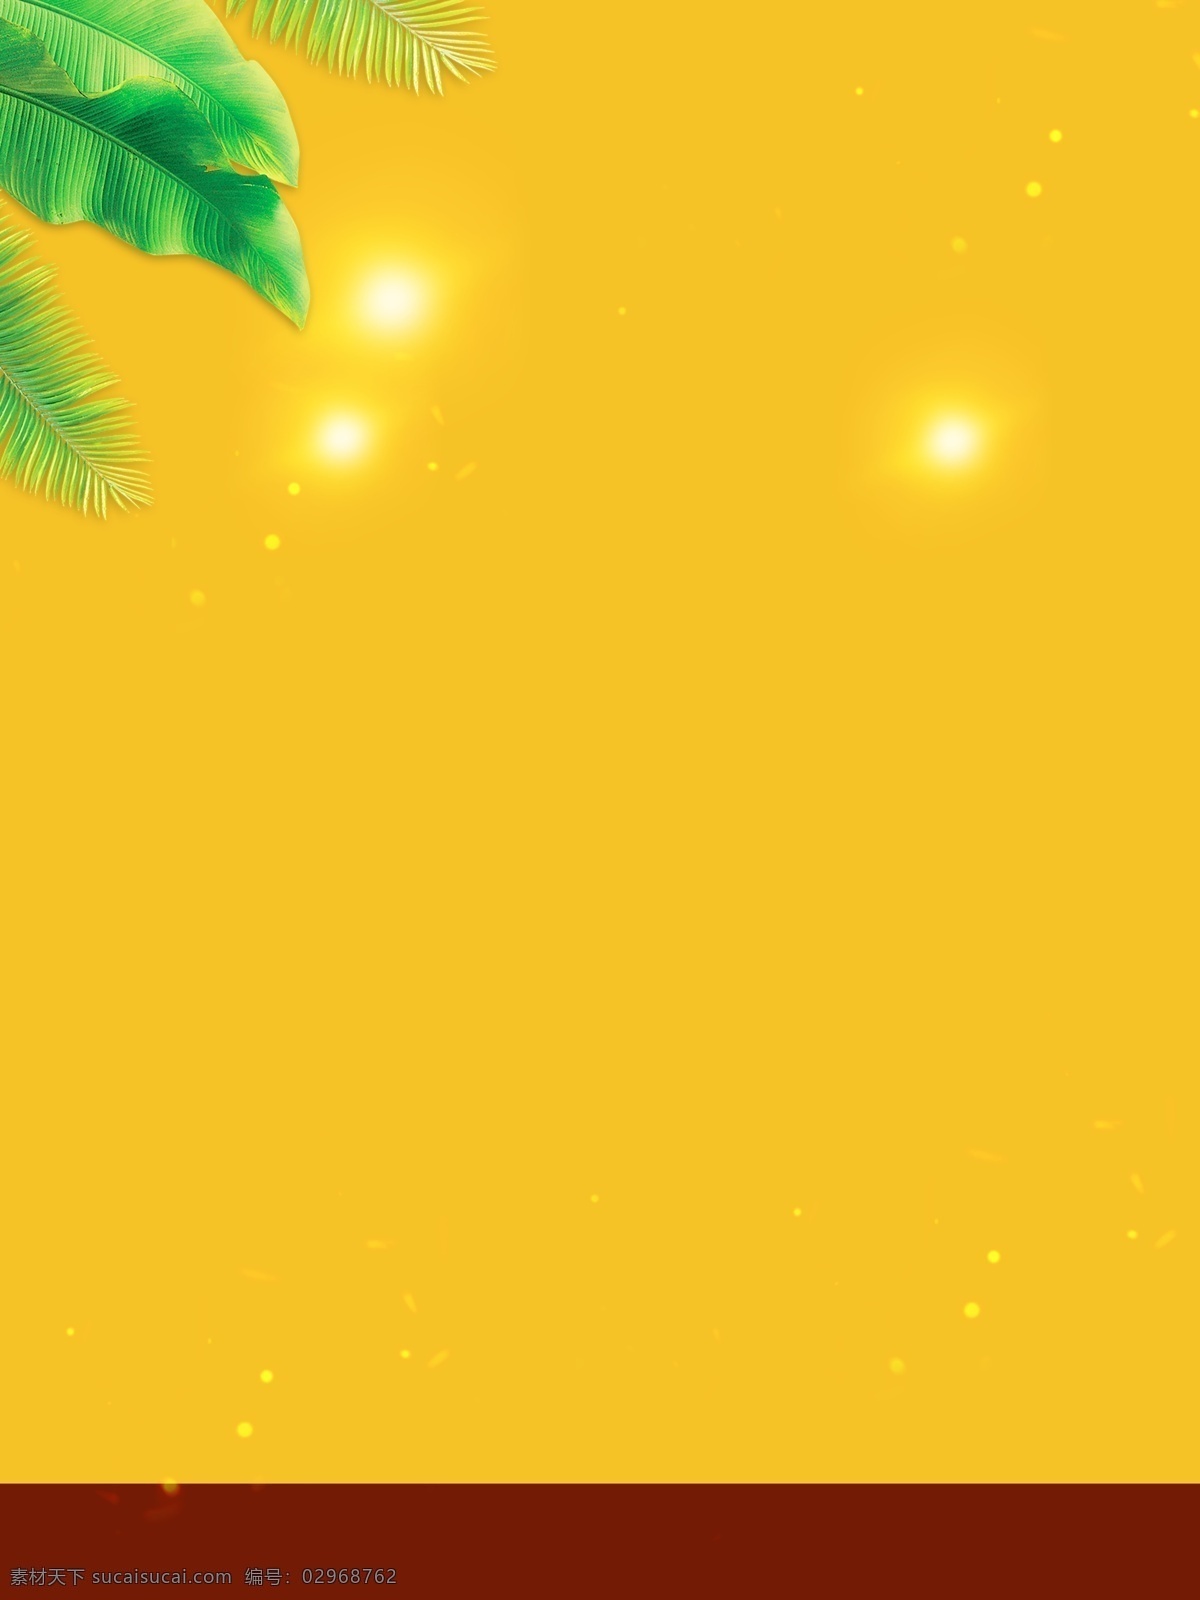 清新 植物 阳光 广告 背景 广告背景 树叶 热带 自然 明亮 明朗